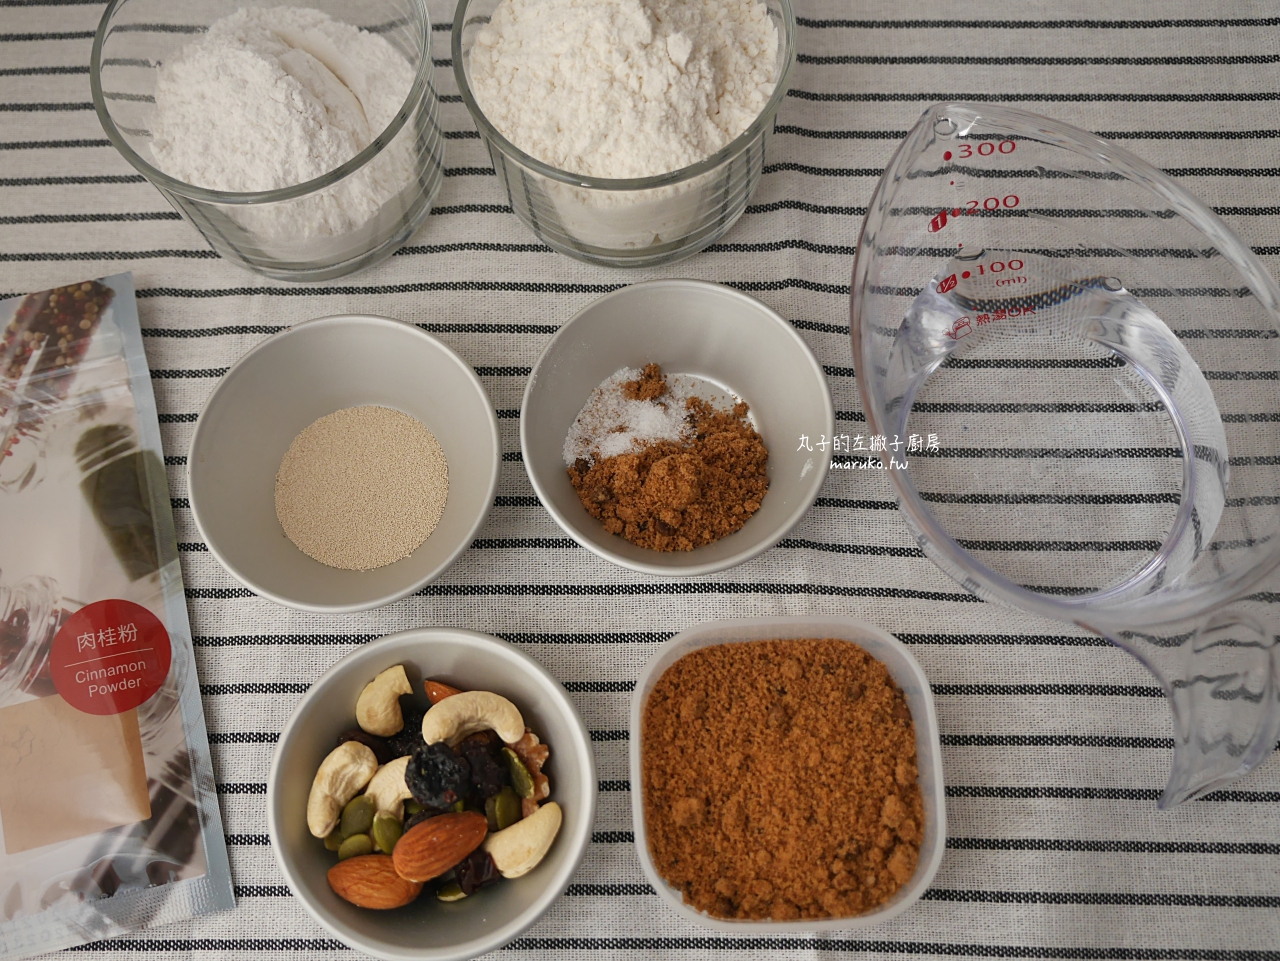 【食譜】11種糯米粉可變化的食譜做法，包含甜醬油糰子、韓國年糕、白皮鯛魚燒、白糖粿做法一次收藏 @Maruko與美食有個約會